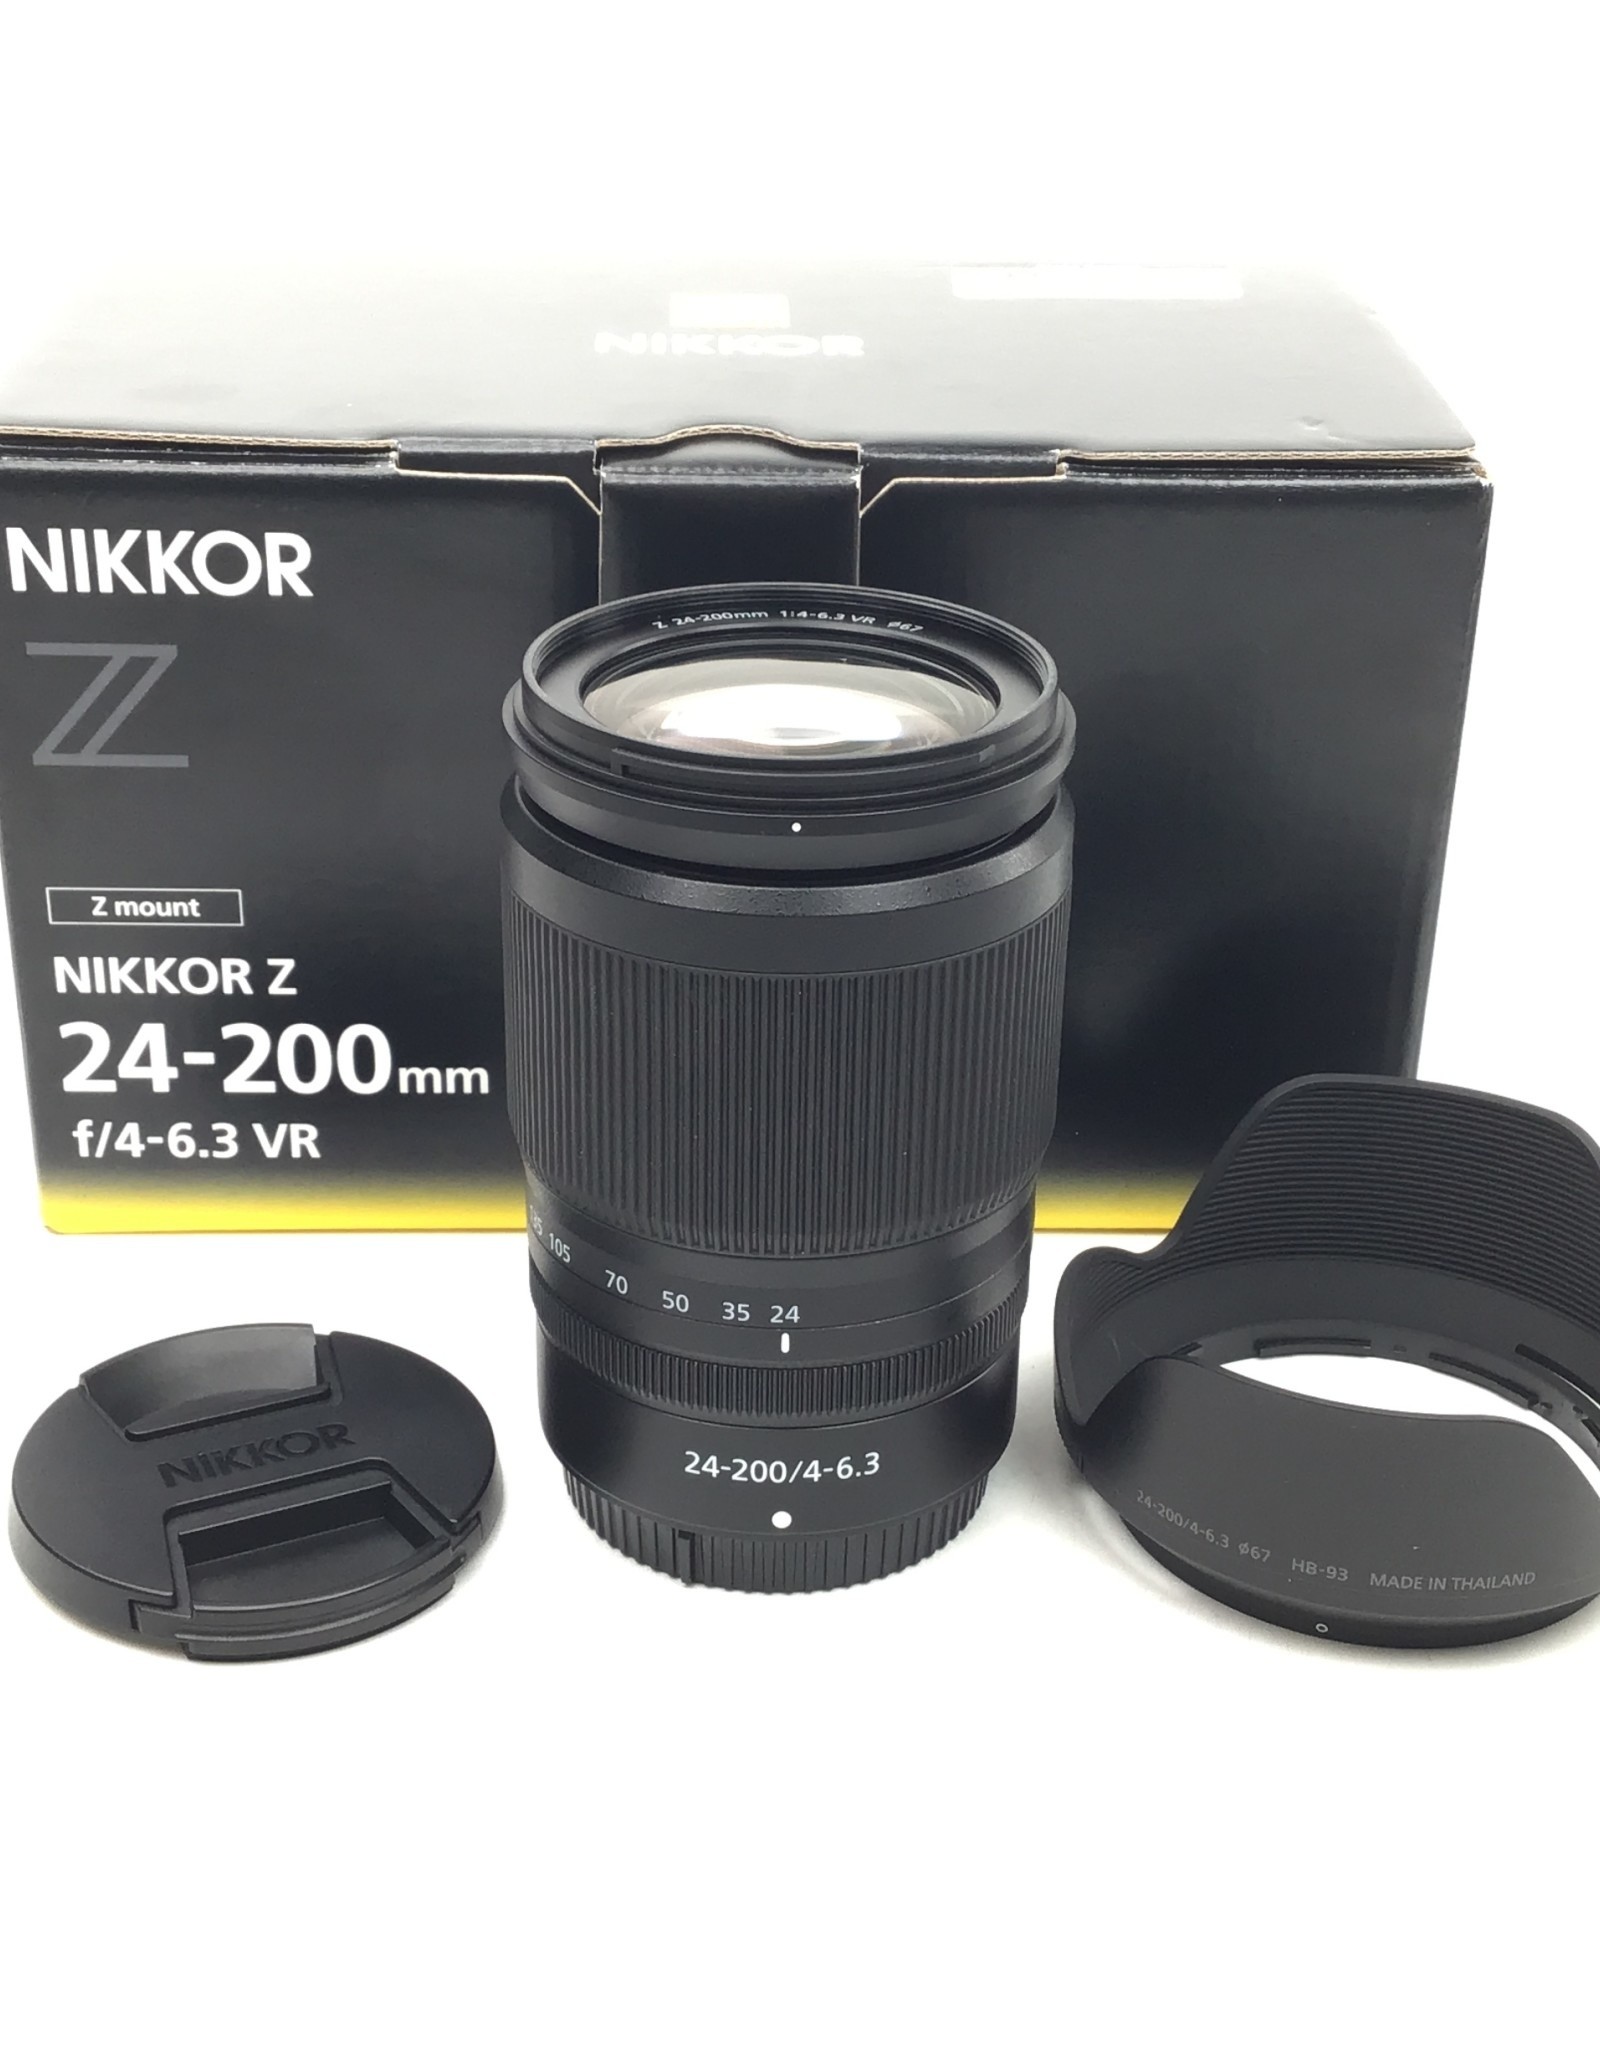 NIKON Nikon Nikkor Z 24-200mm f4-6.3 VR Lens in Box Used Good